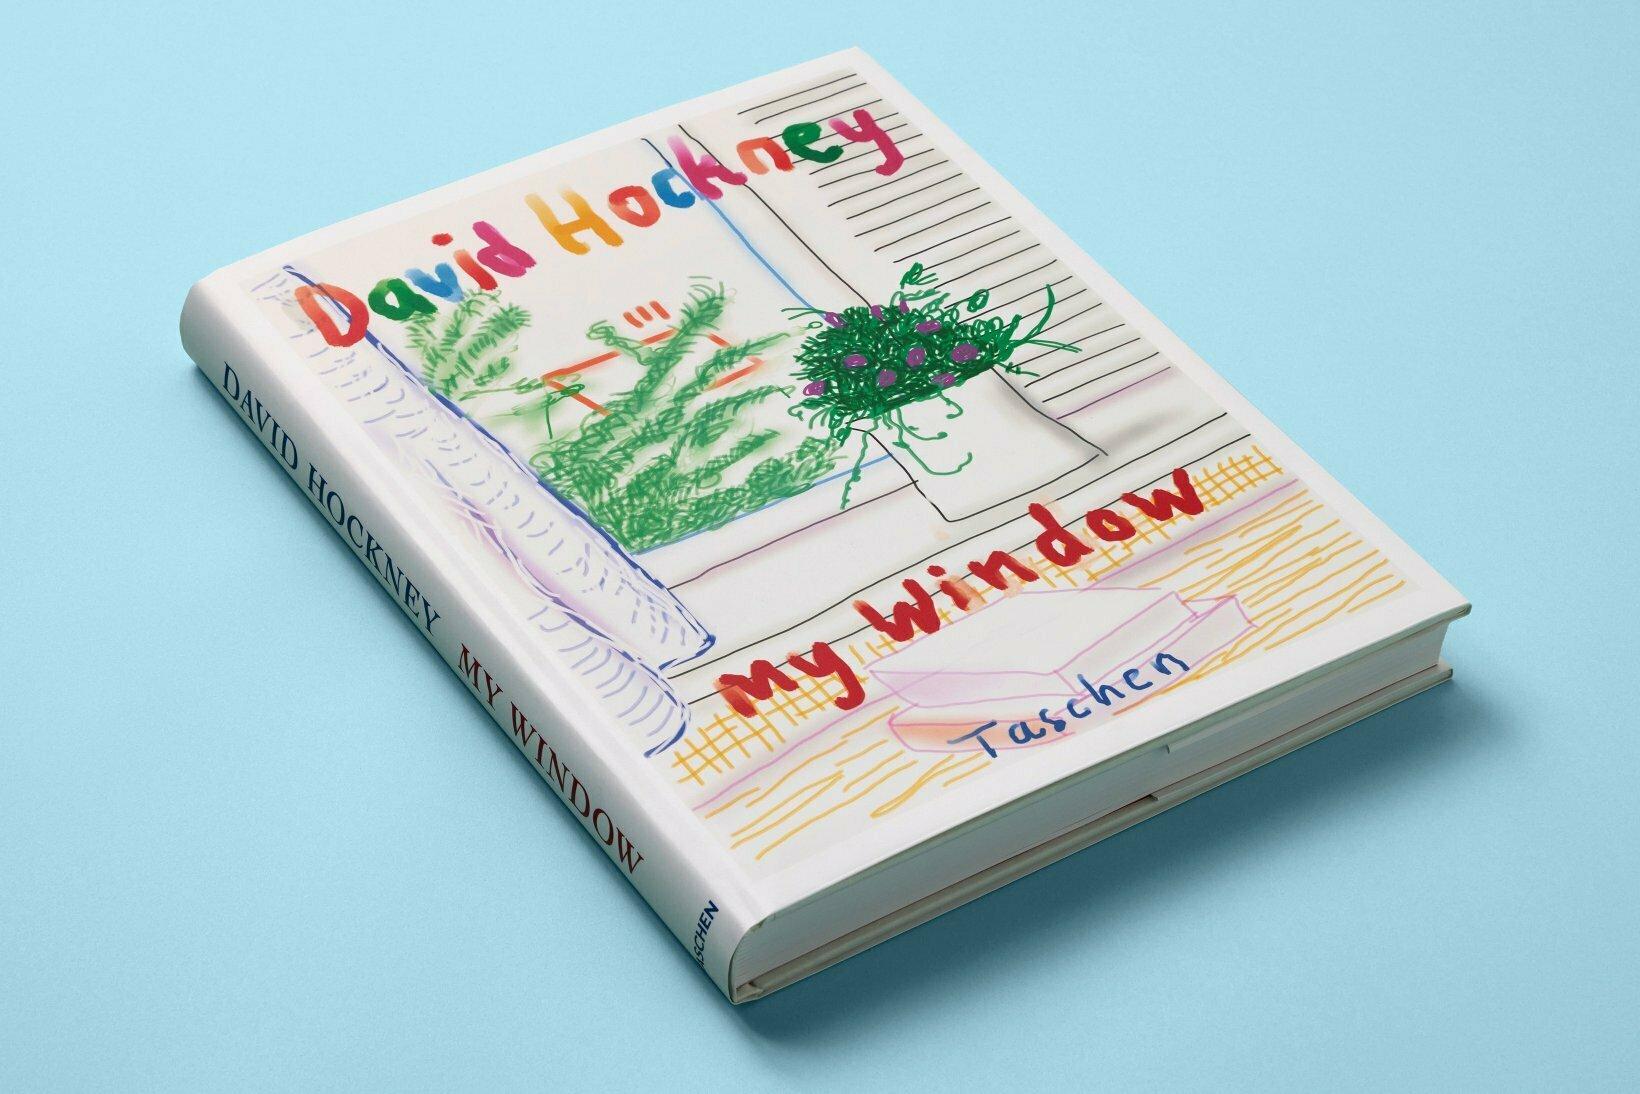 Fenêtre sur le monde.

Le livre d'artiste de David Hockney dans une édition XL illimitée.

Lorsque David Hockney a découvert l'iPhone en tant que support artistique, il a ouvert de toutes nouvelles possibilités pour son art. Il a réalisé ses